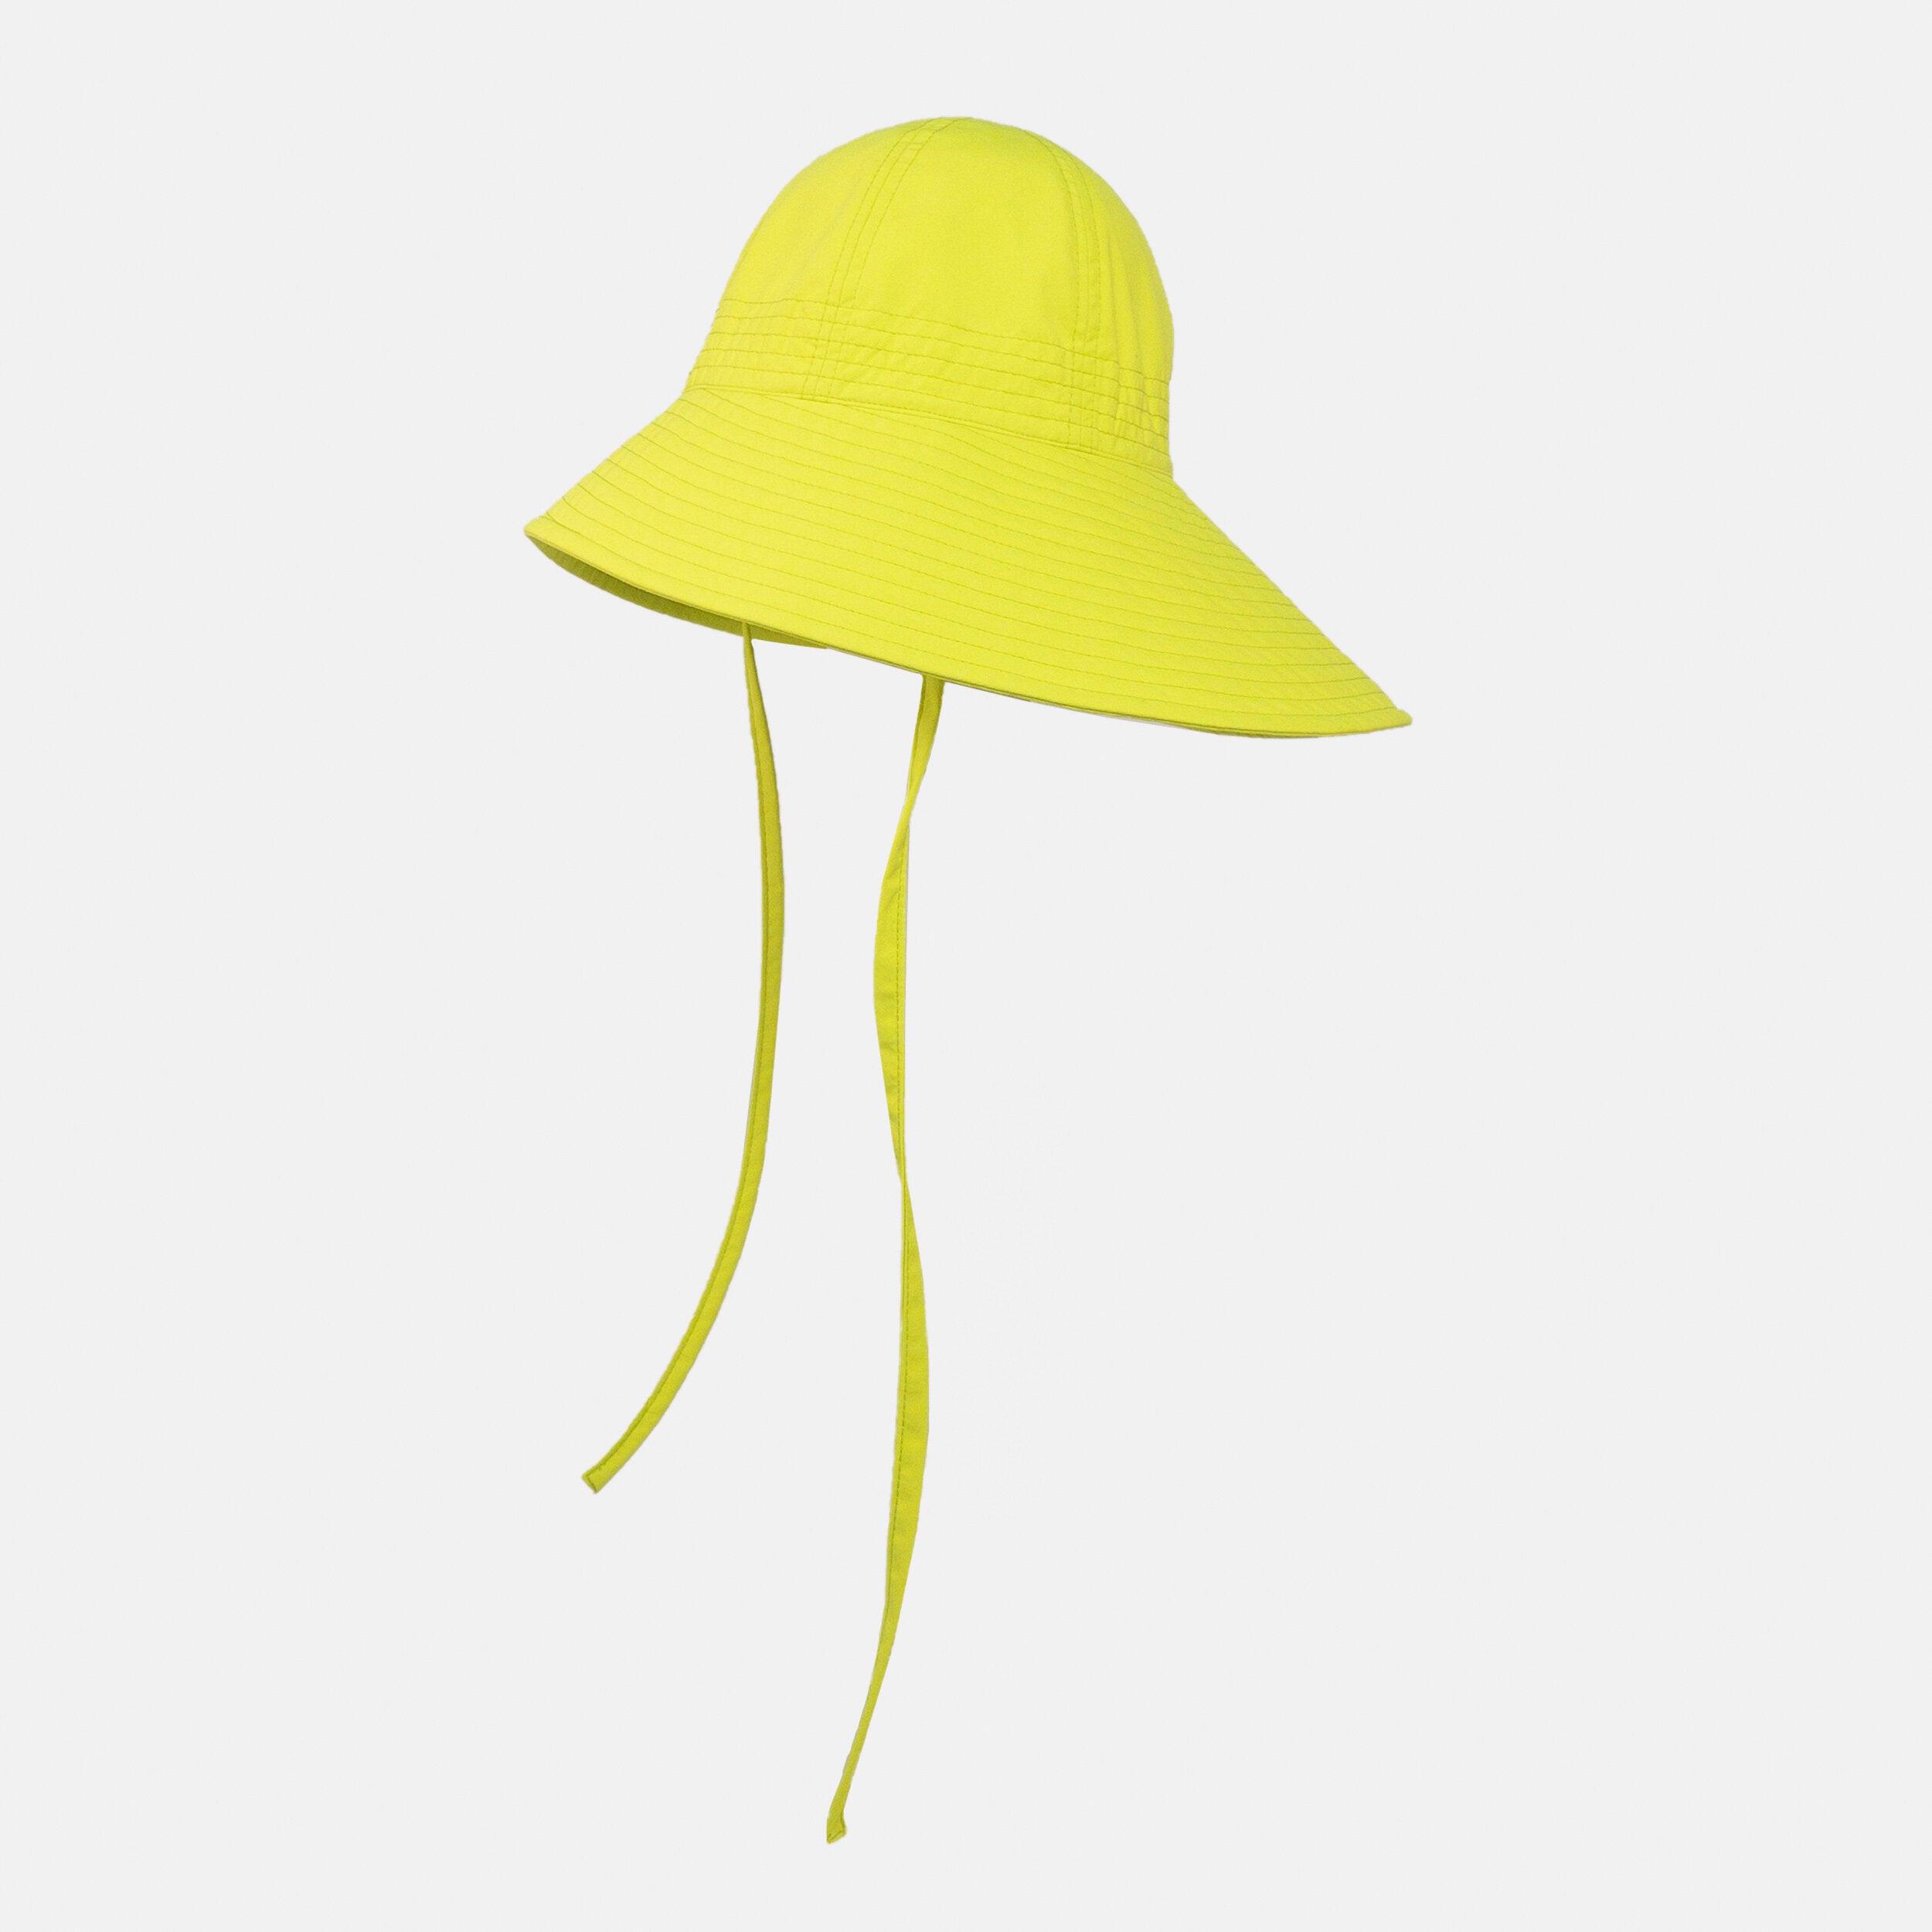 3L Waterproof Garden Hat in Neon Yellow